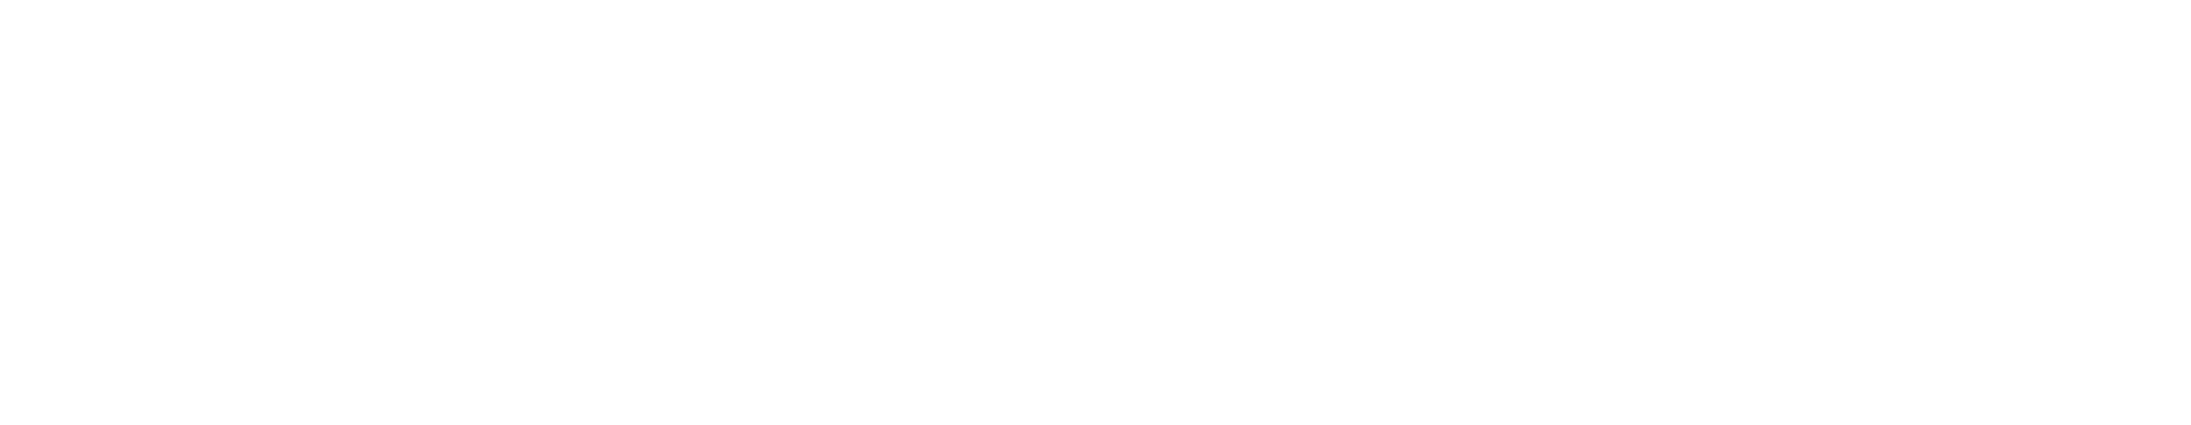 Hyundai Quảng Ngãi – Đại lý ủy quyền 3s của Hyundai Thành Công